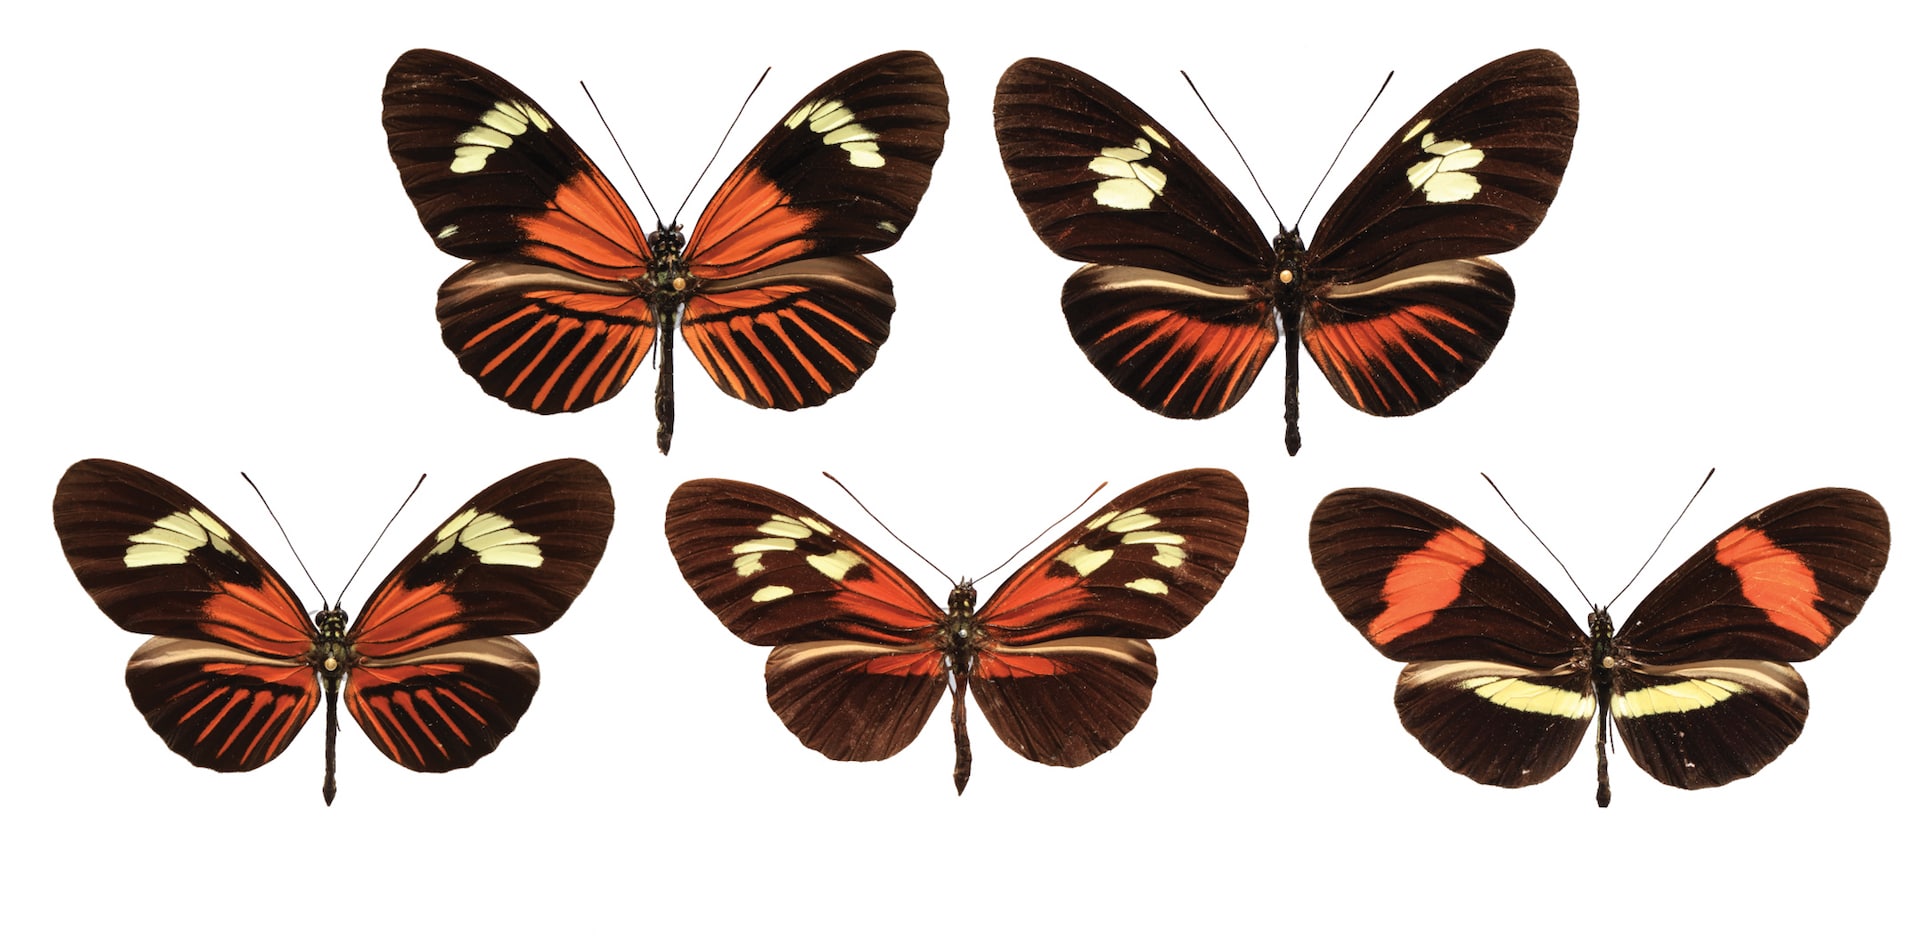 Descubren una “paleta de colores” genética en las mariposas